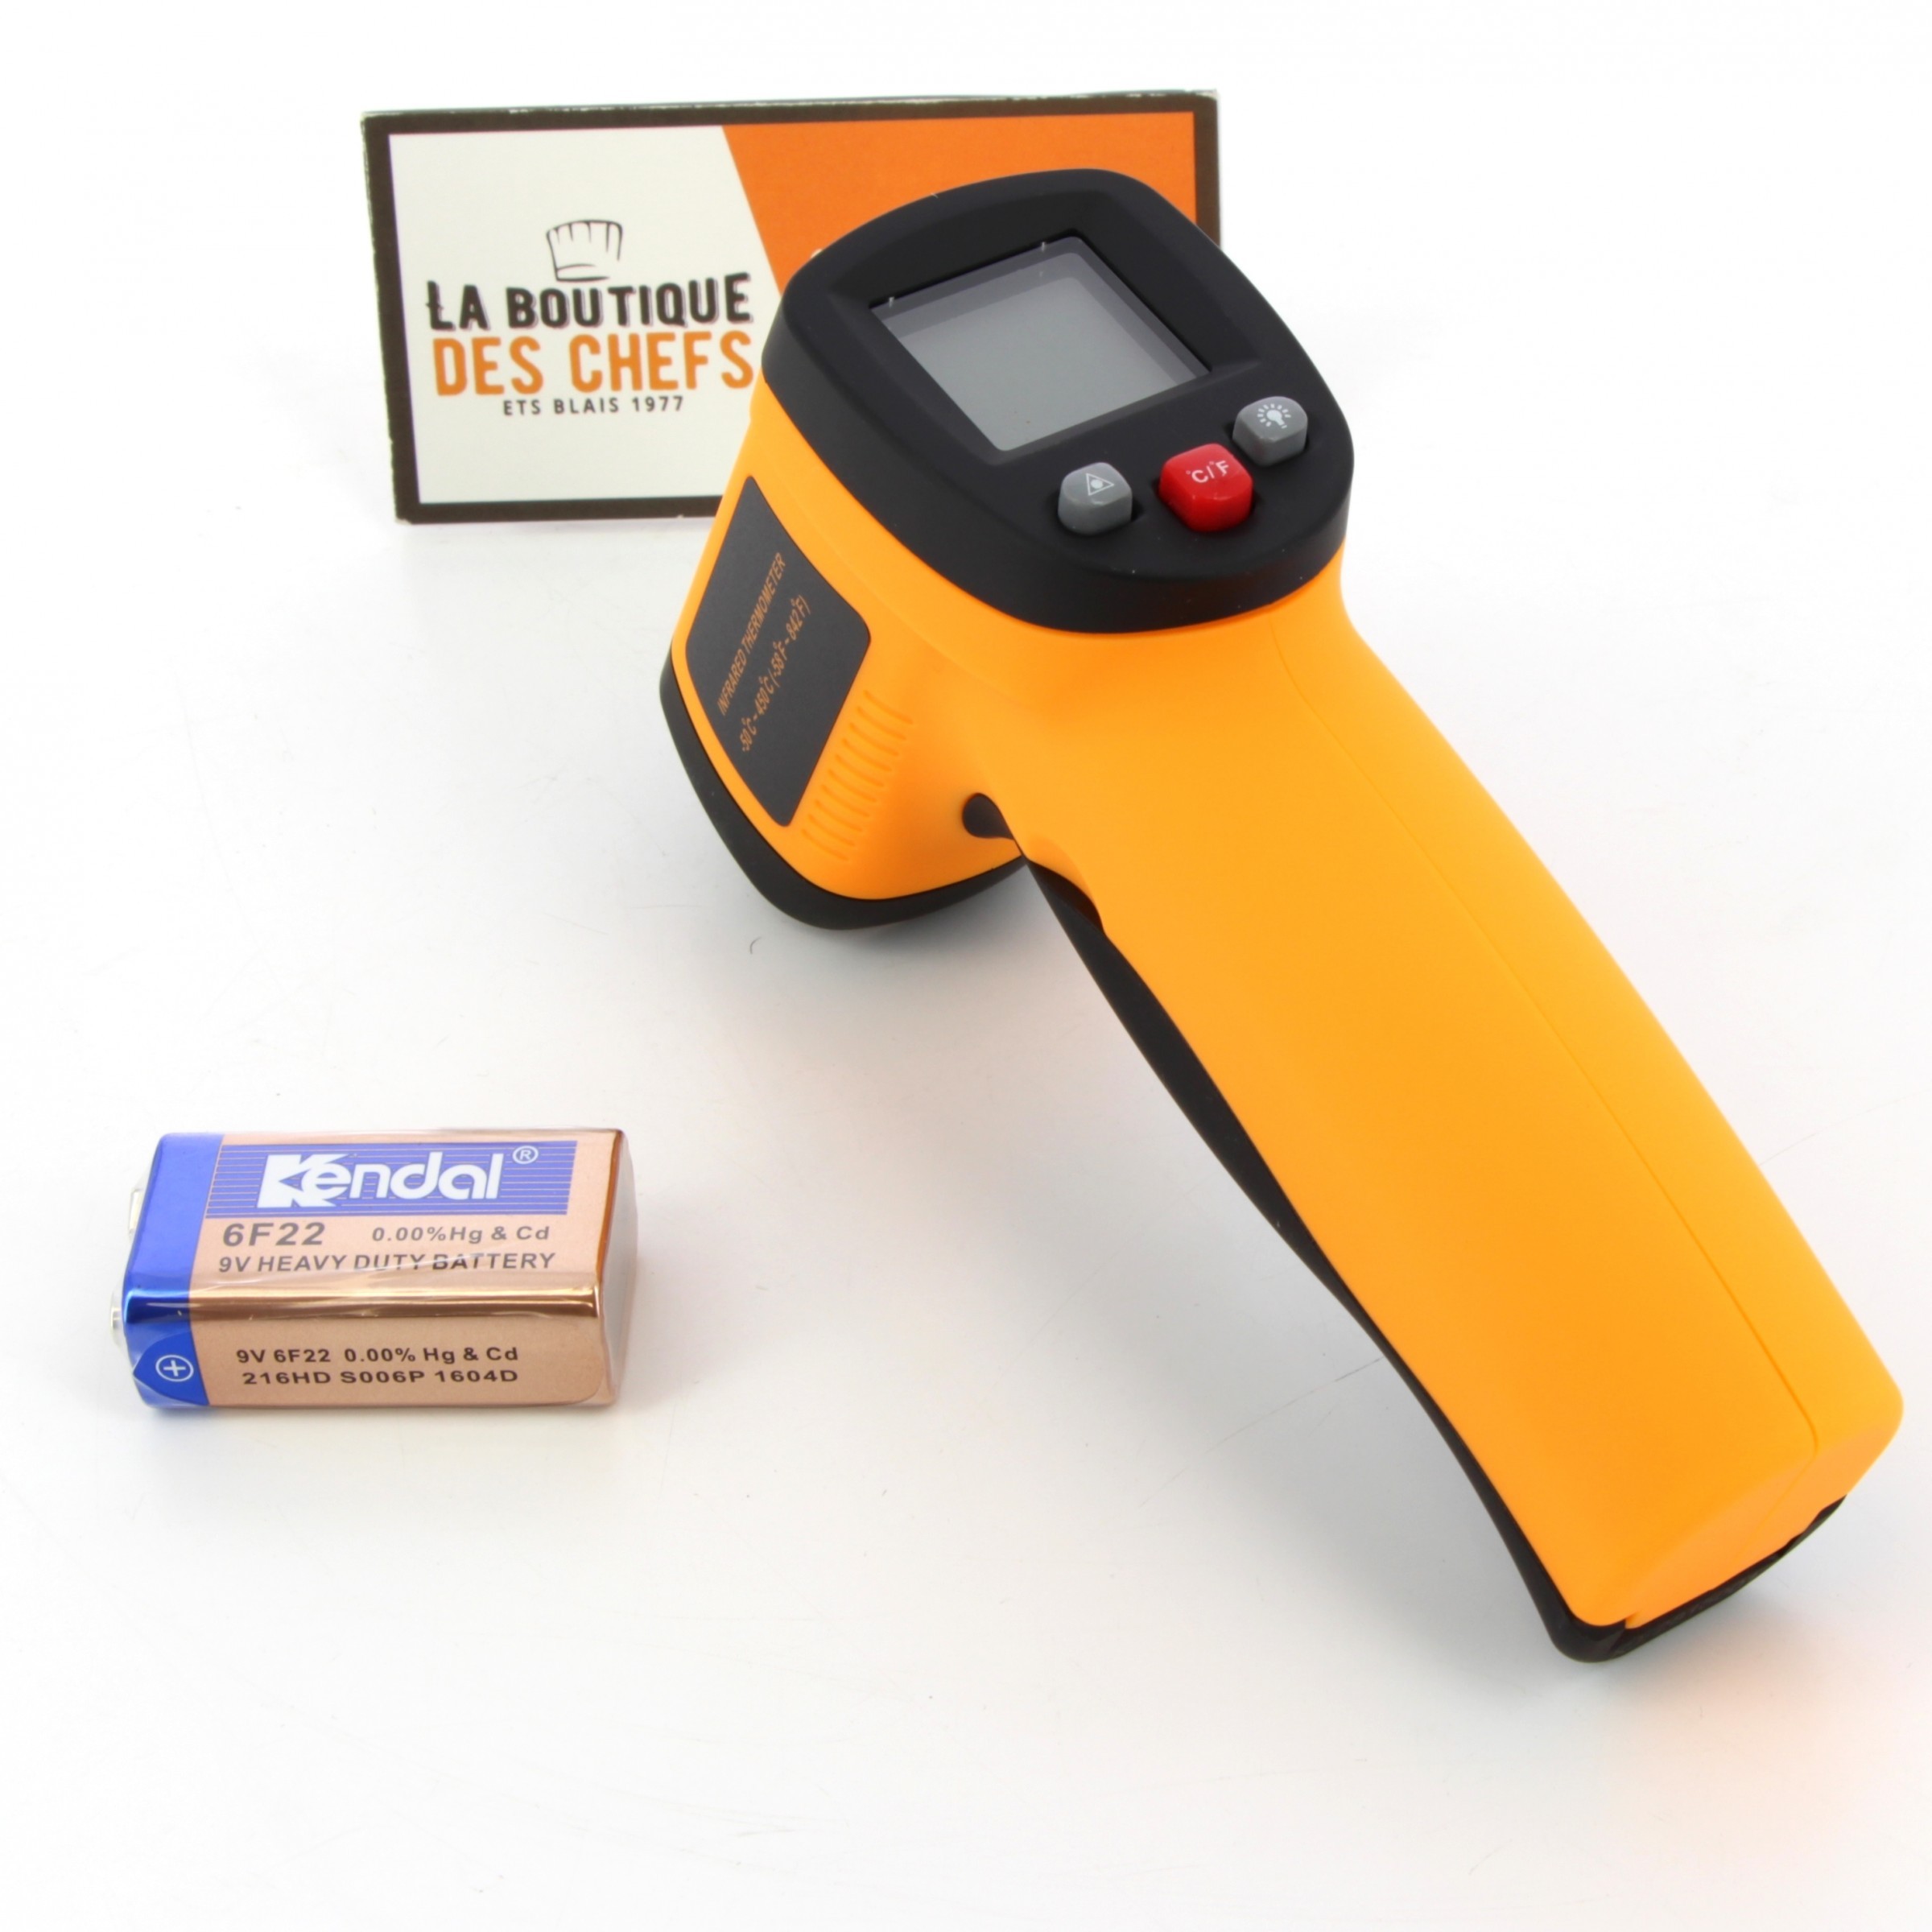 Thermometre Cuisine Infrarouge à visée laser - Travail du Chocolat